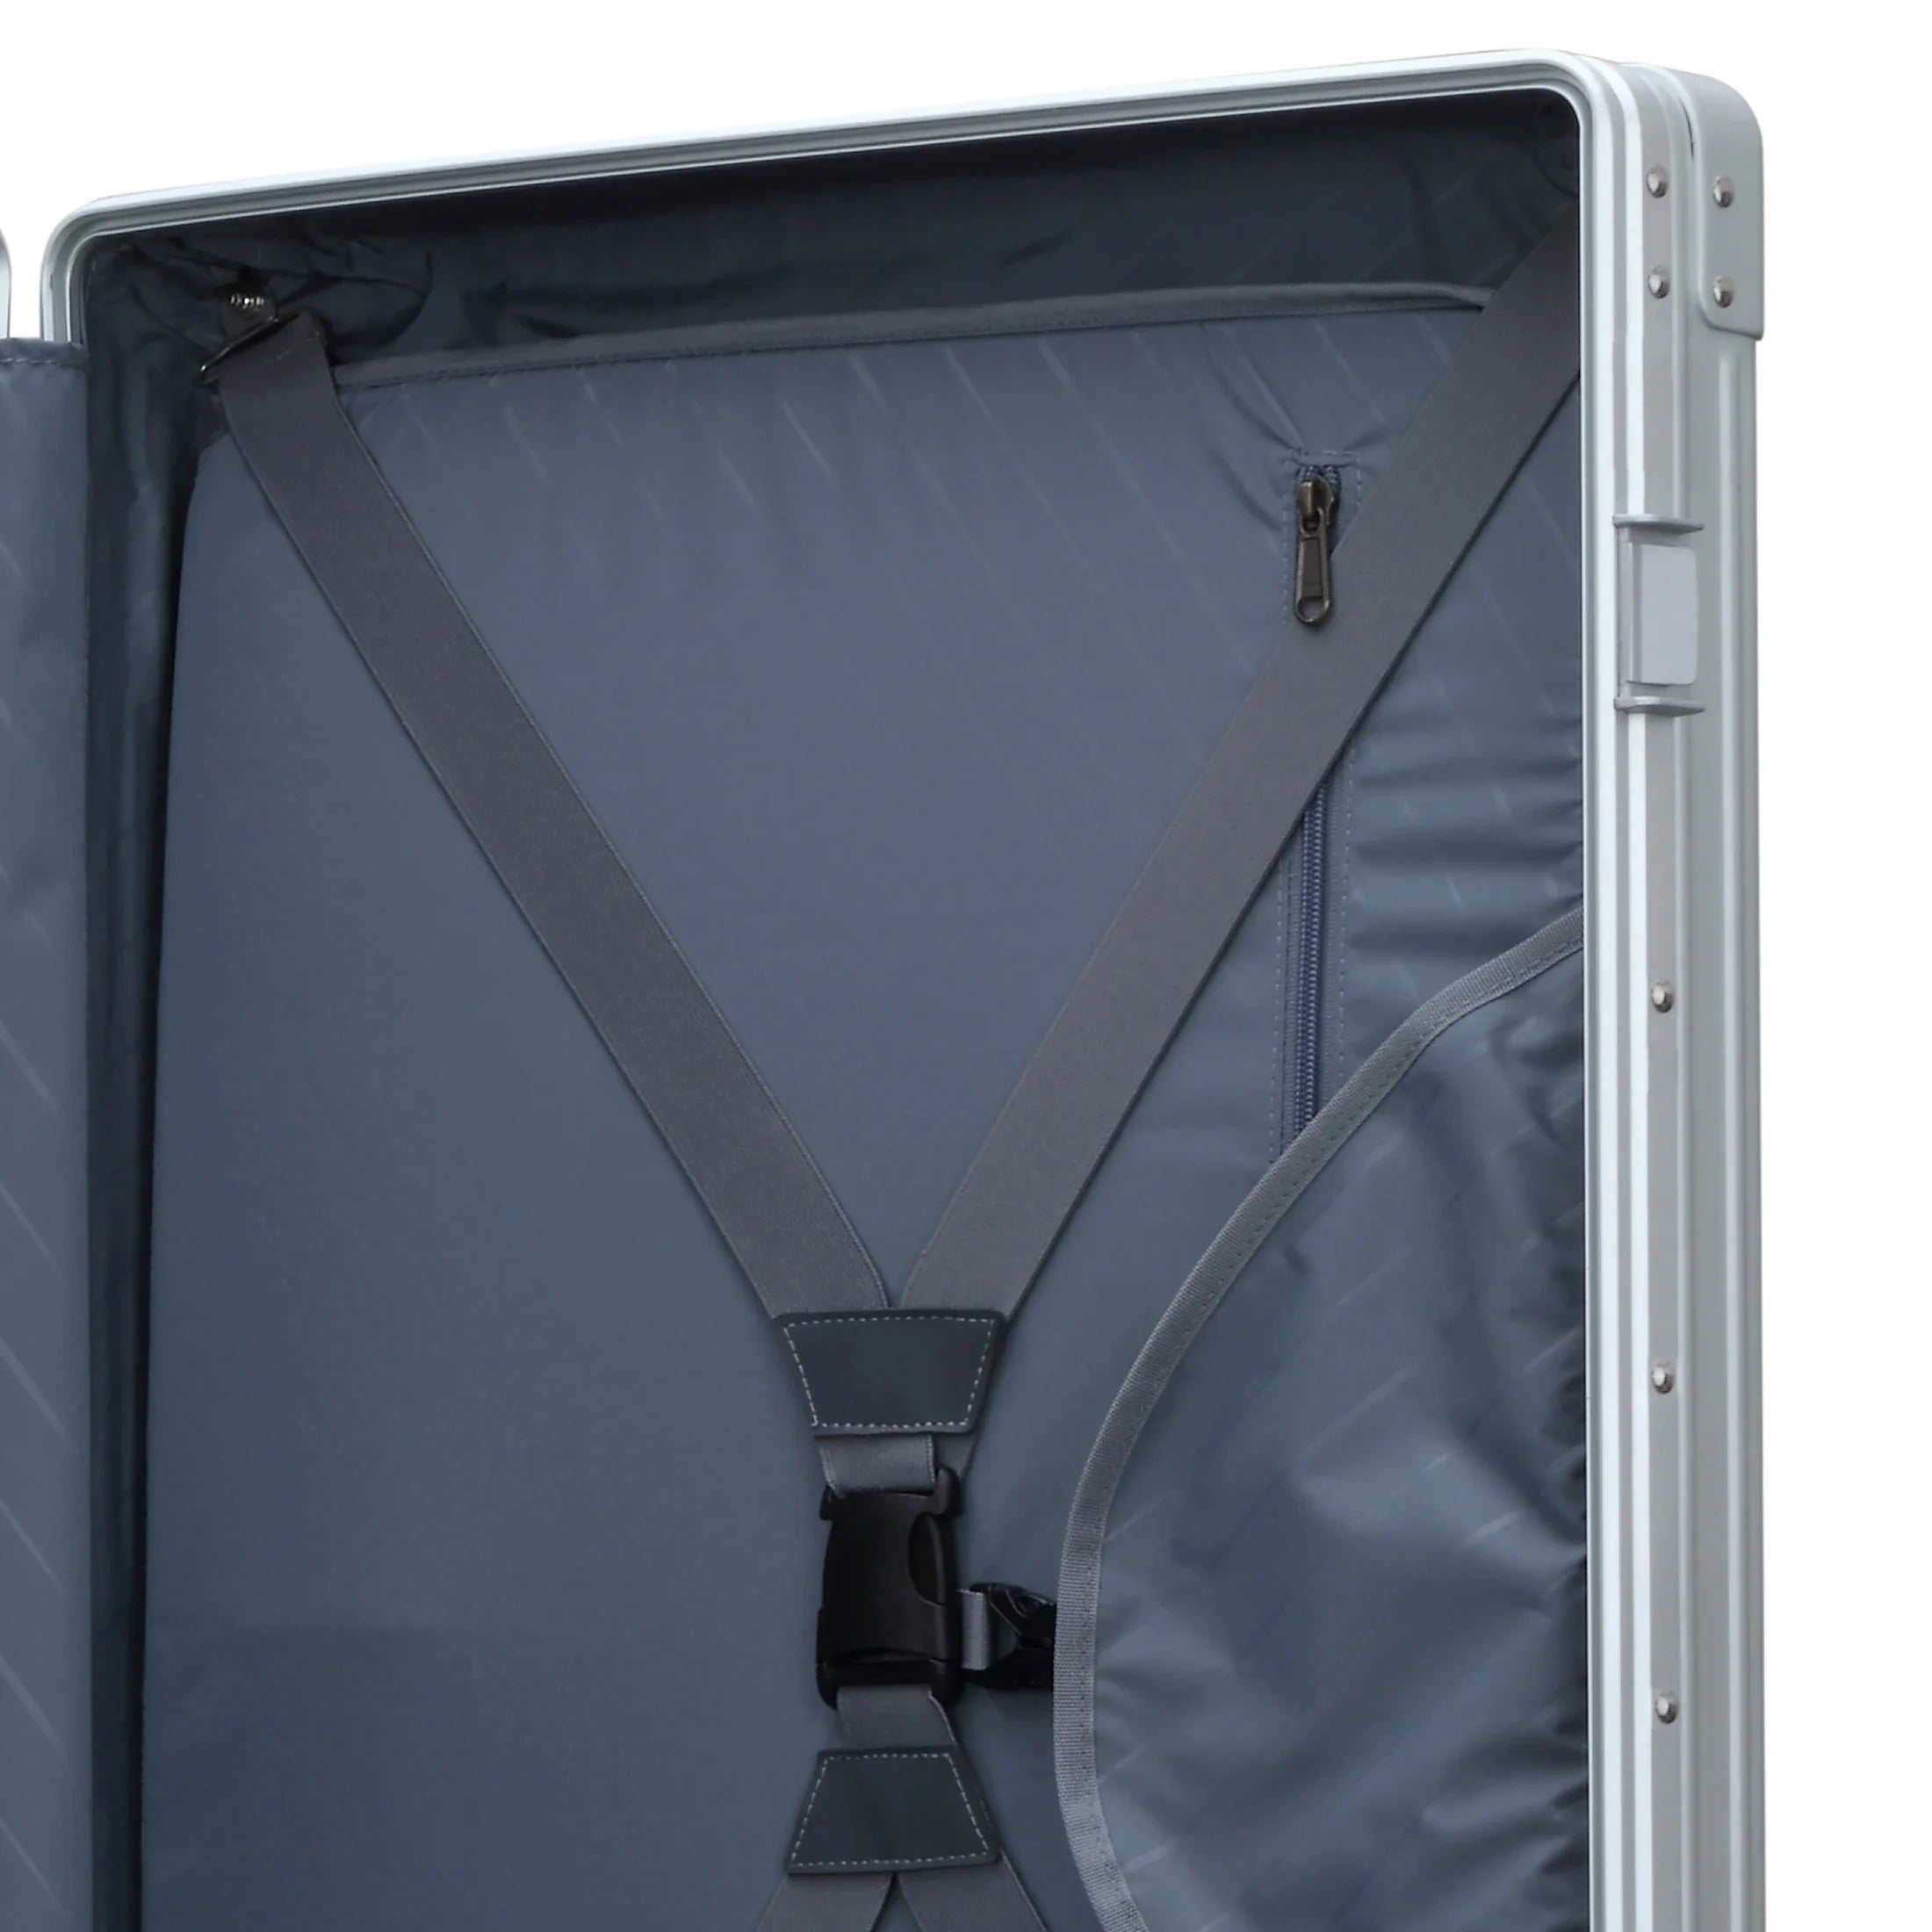 Aleon Traveler 4-wheel suitcase with garment bag 67 cm - Platinum